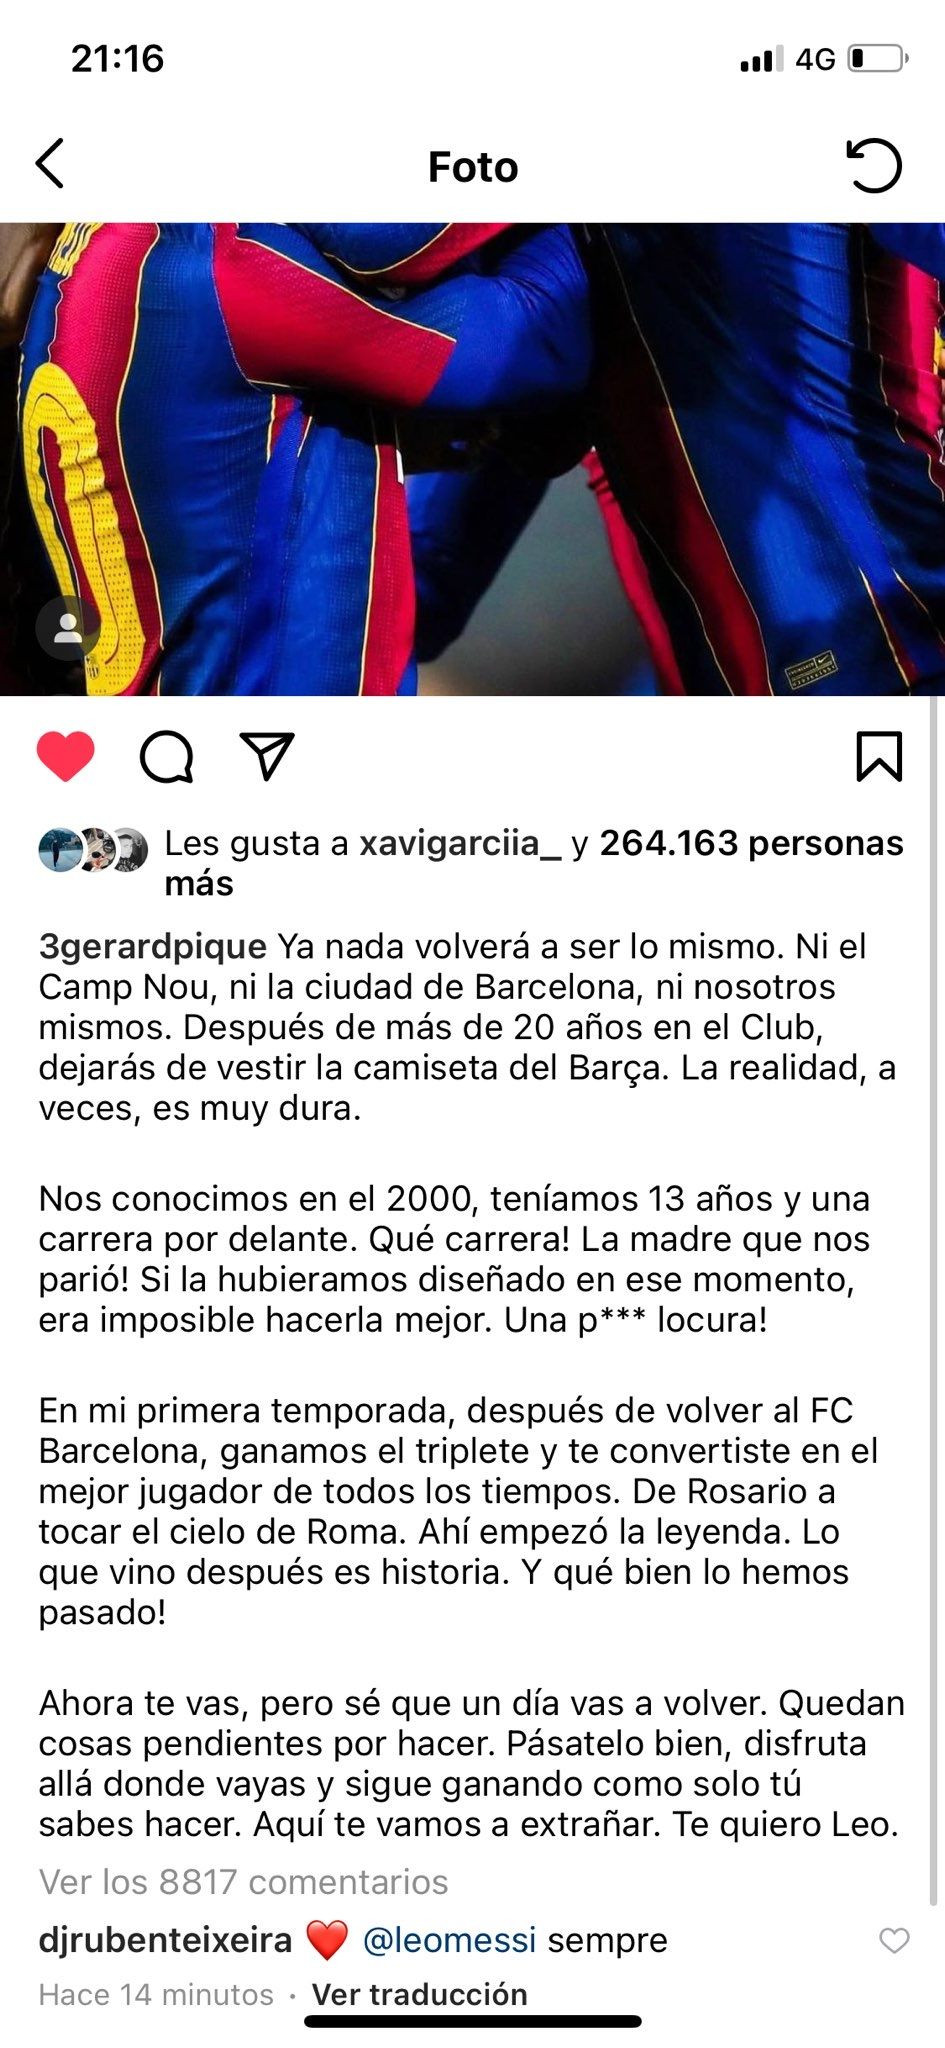 El mensaje de Gerard Piqué a Leo Messi en Instagram